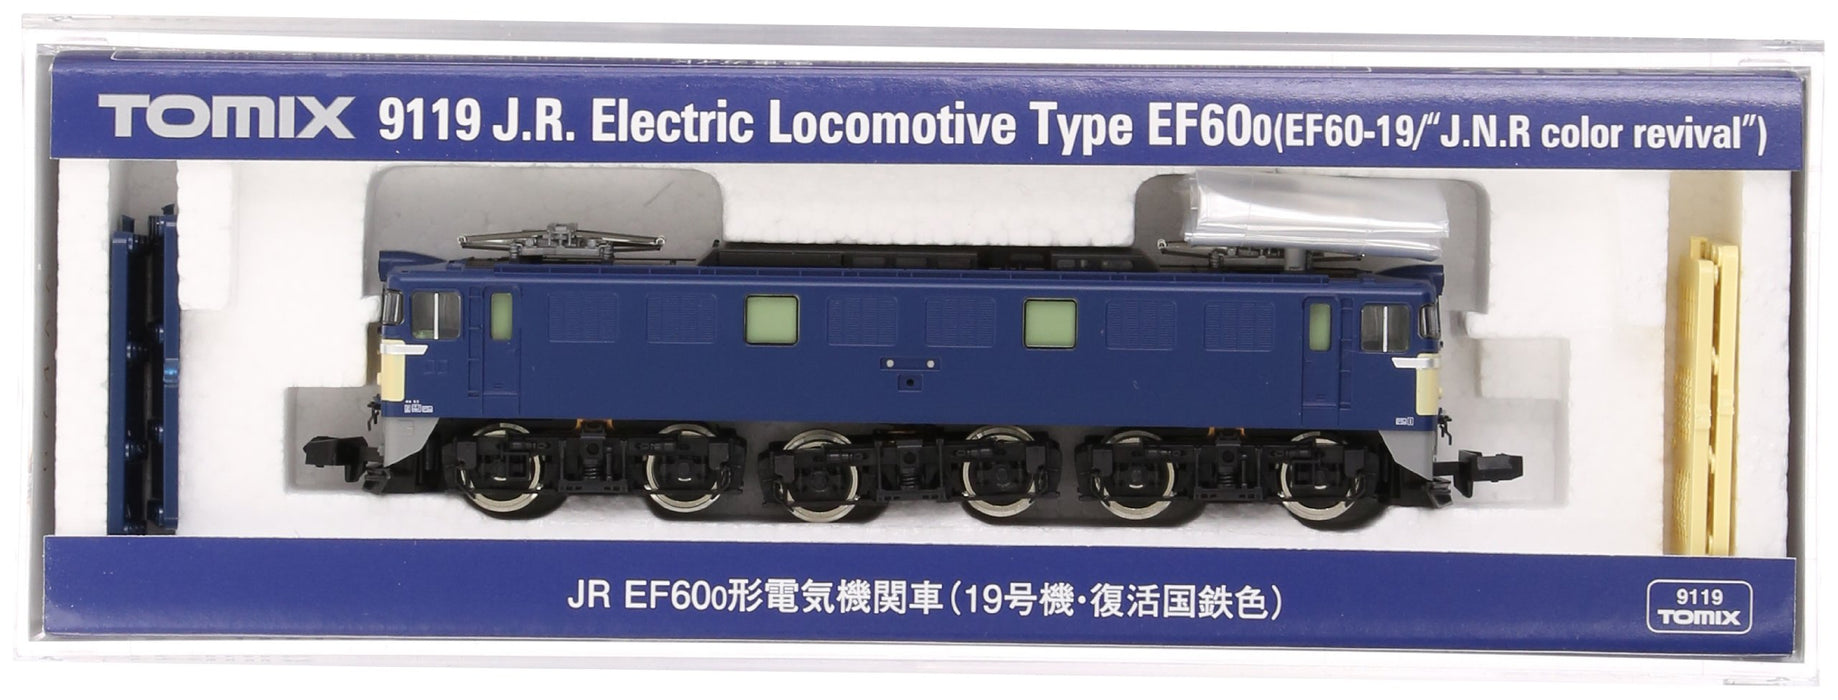 Tomytec Tomix N Gauge Ef60-0 Unit 19 Revival JNR Color 9119 Railway Electric Locomotive Model